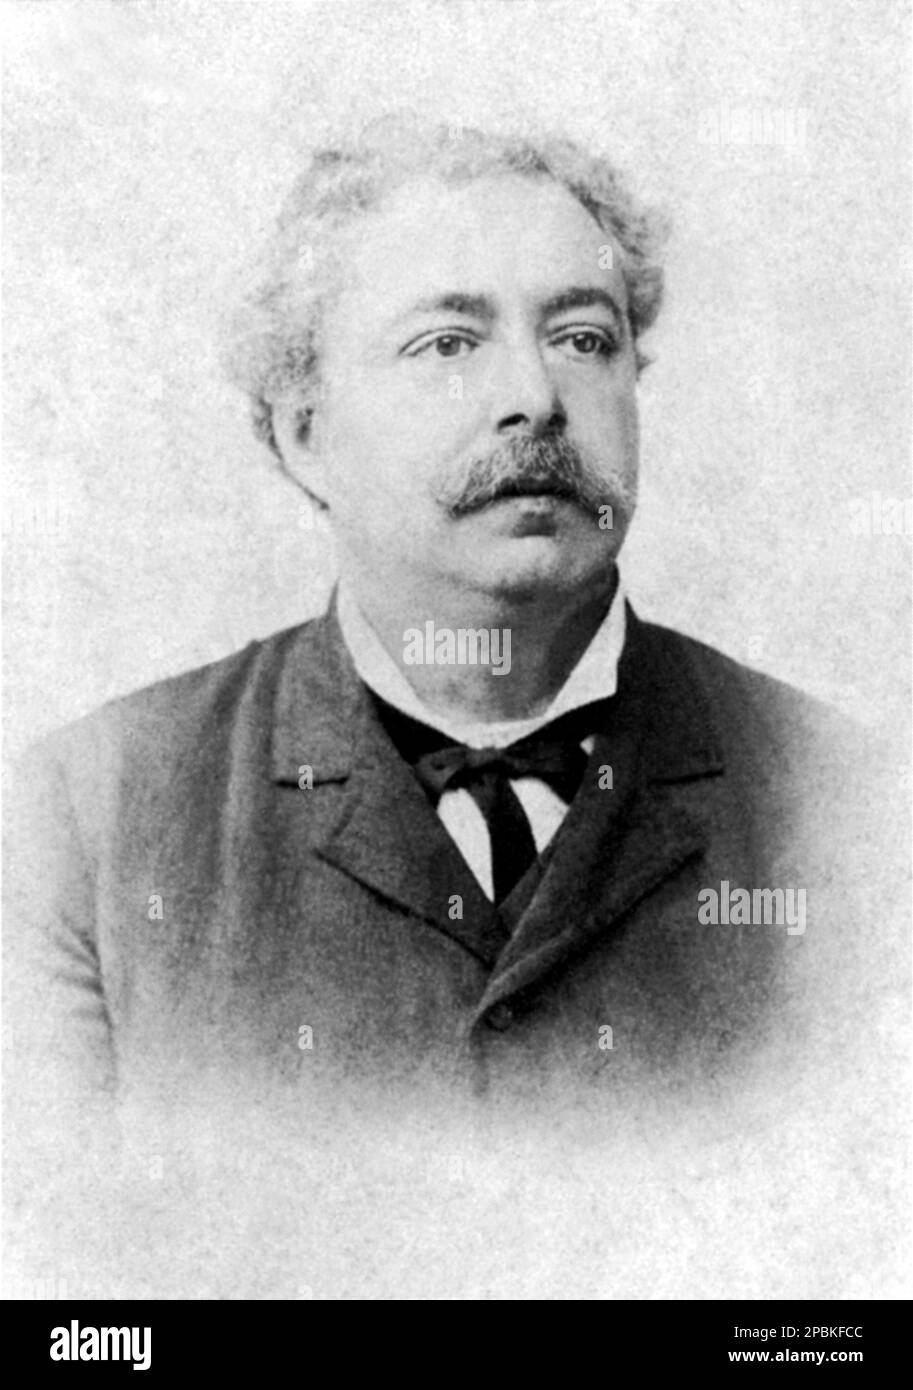 The most celebrated italian popular writer EDMONDO DE AMICIS ( Oneglia 1846 - Bordighera 1908 ) , author of book CUORE ( 1866 ) - SCRITTORE - LETTERATURA - LITERATURE - LETTERATO - portrait - ritratto - collar - colletto - tie  bow - cravatta - baffi - moustache ----  Archivio GBB Stock Photo